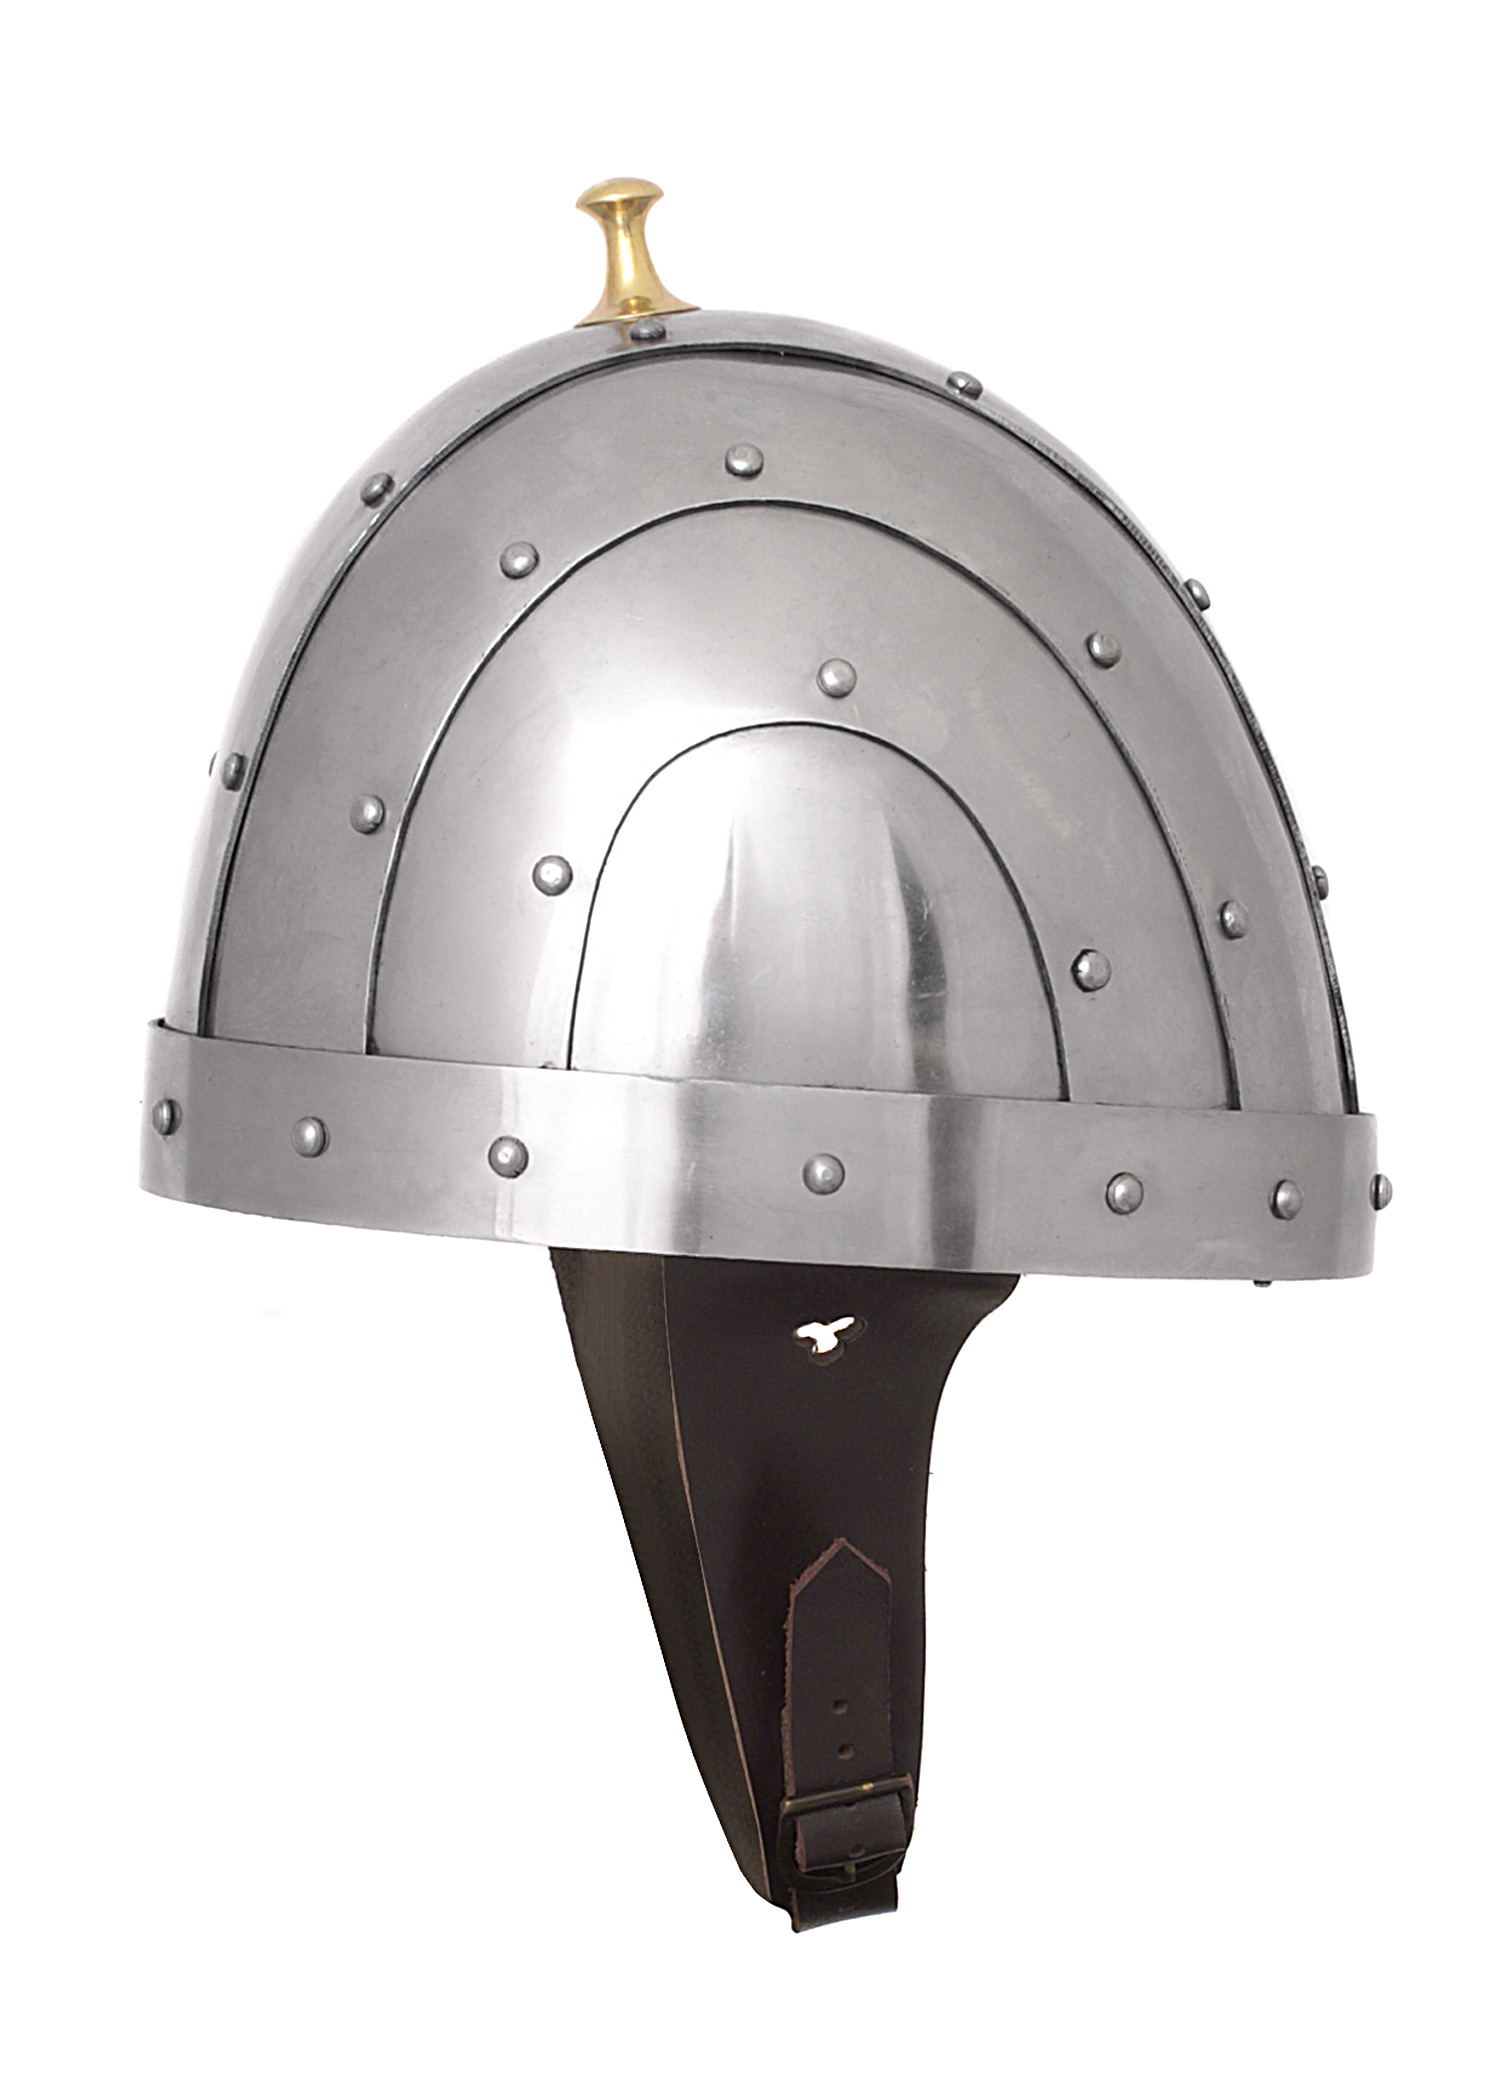 Byzantinischer Helm, 2 mm Stahl, Größe M